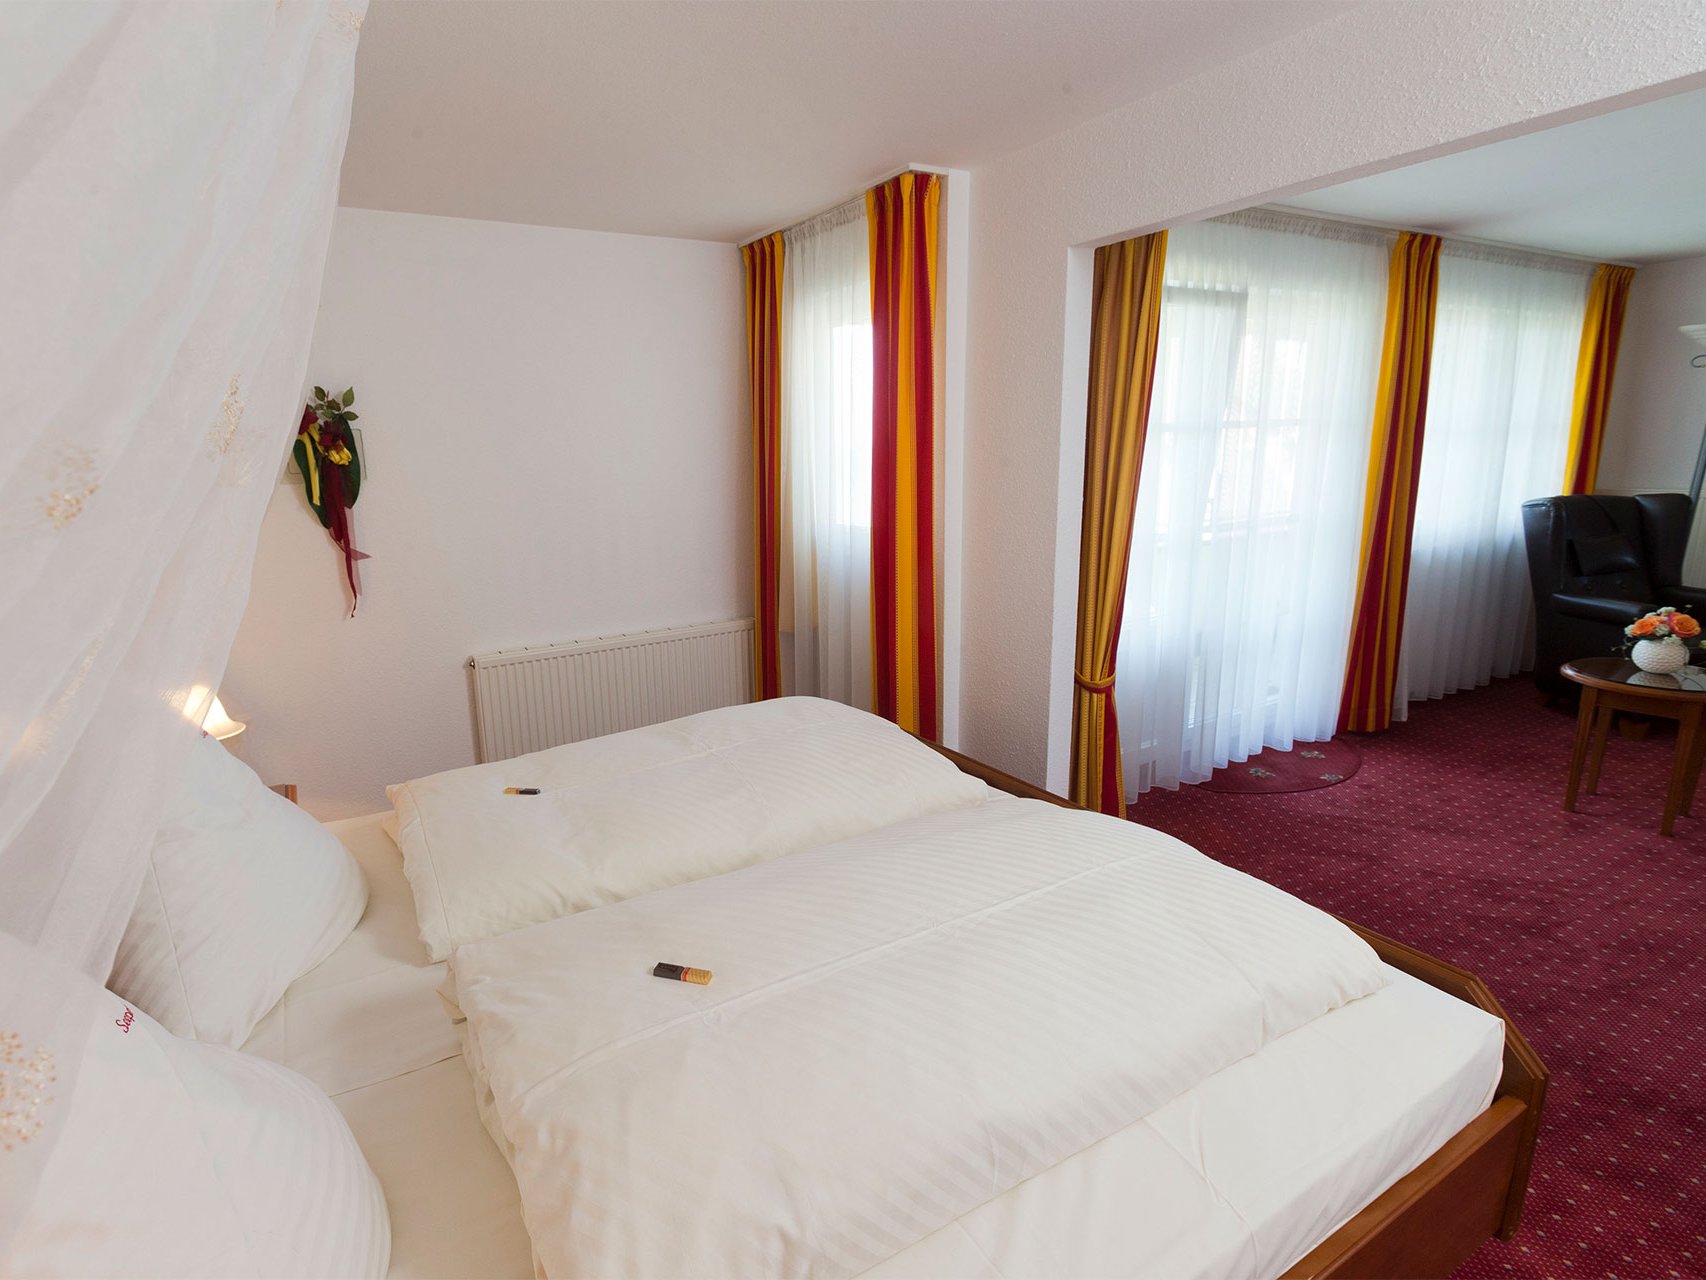 Junior-Suite zur Seeseite des Hotels Seeperle am Bodensee.